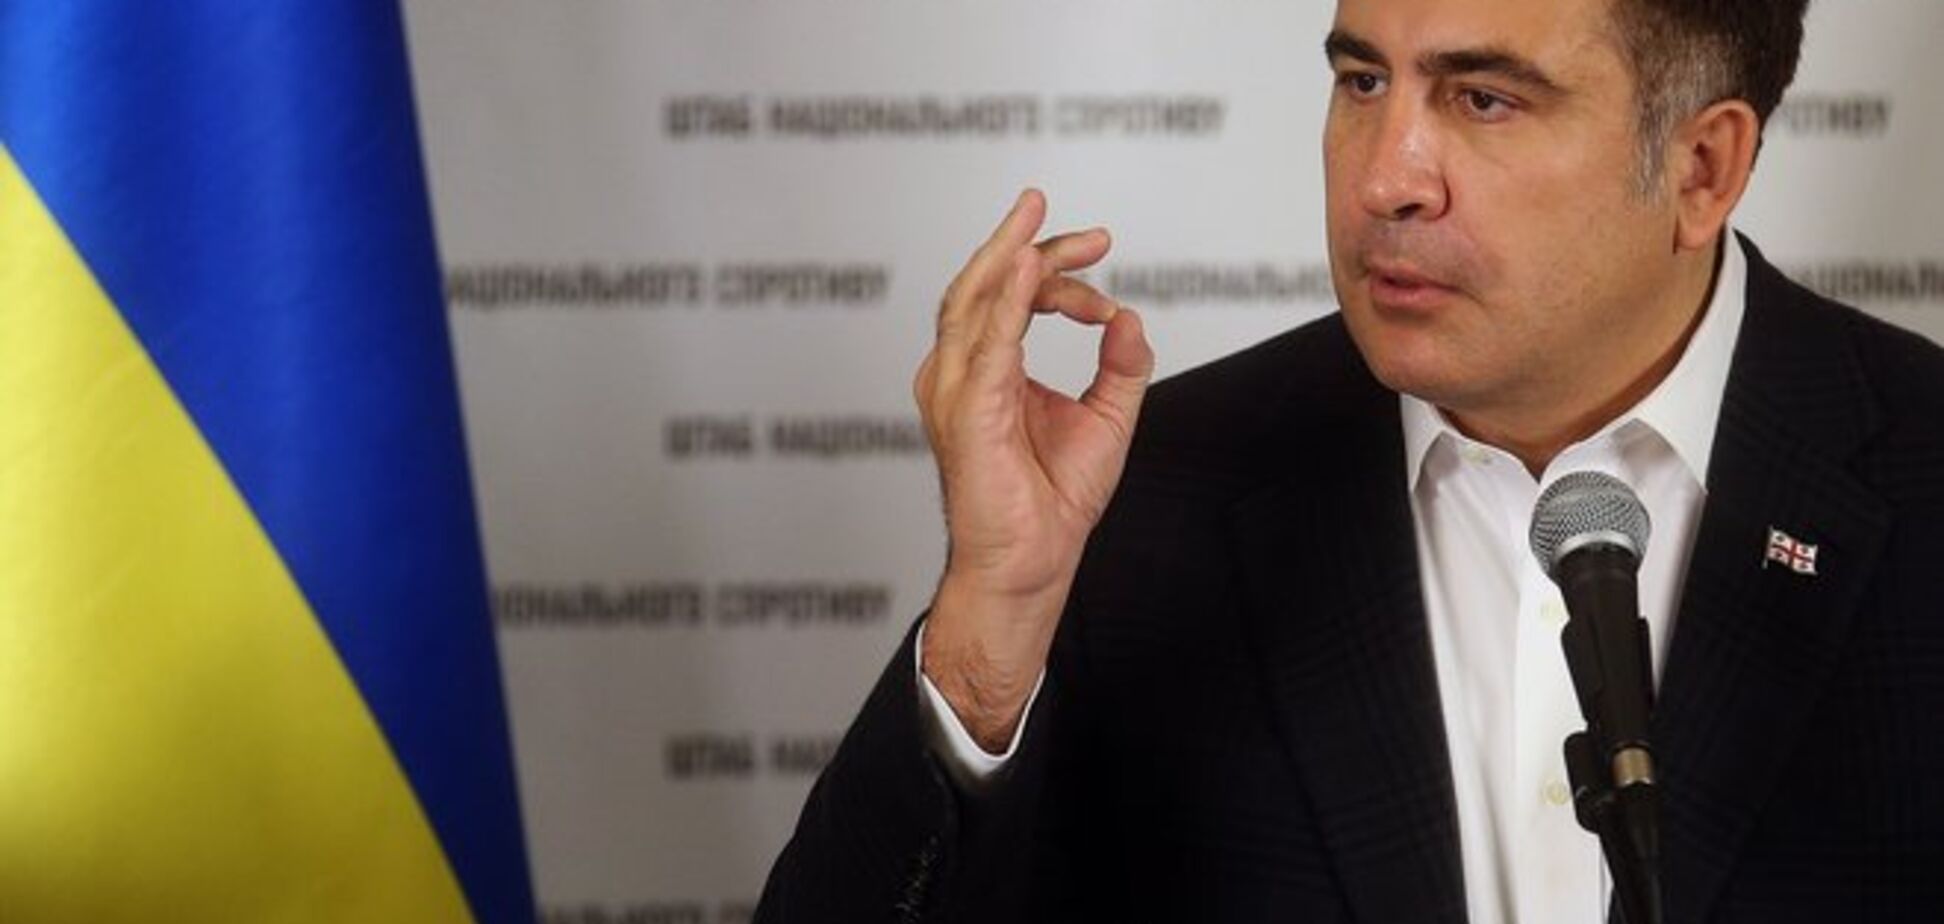 Порошенко назначил Саакашвили своим советником. Это очень расстроит Путина